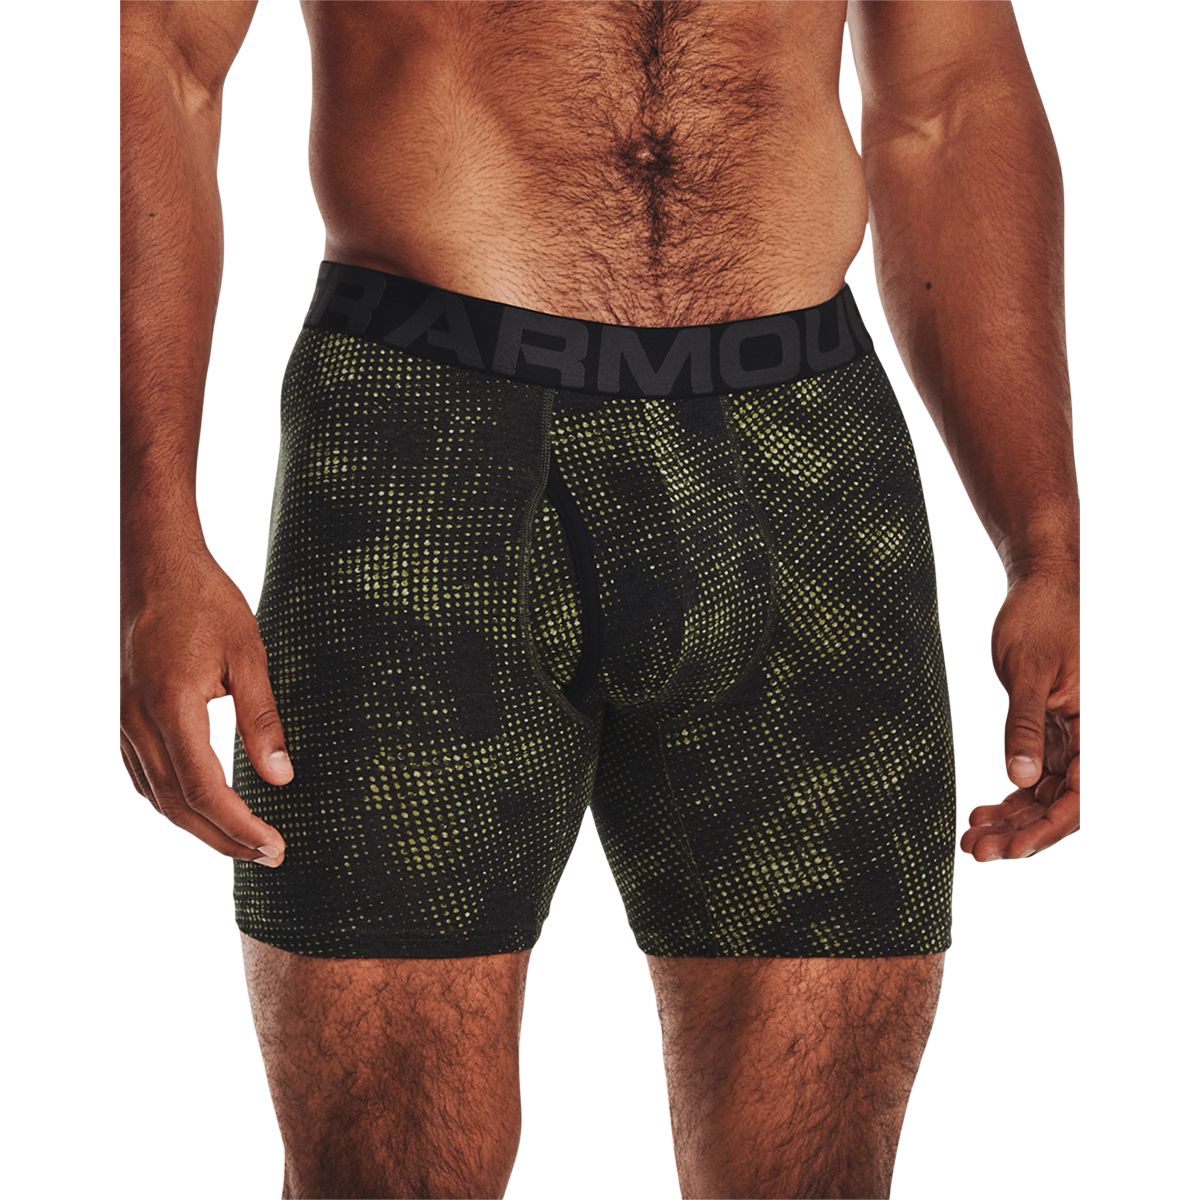 Under Armour Q17405 Assorted 3-Pack 6 Boxer Briefs Underwear Men's Size M